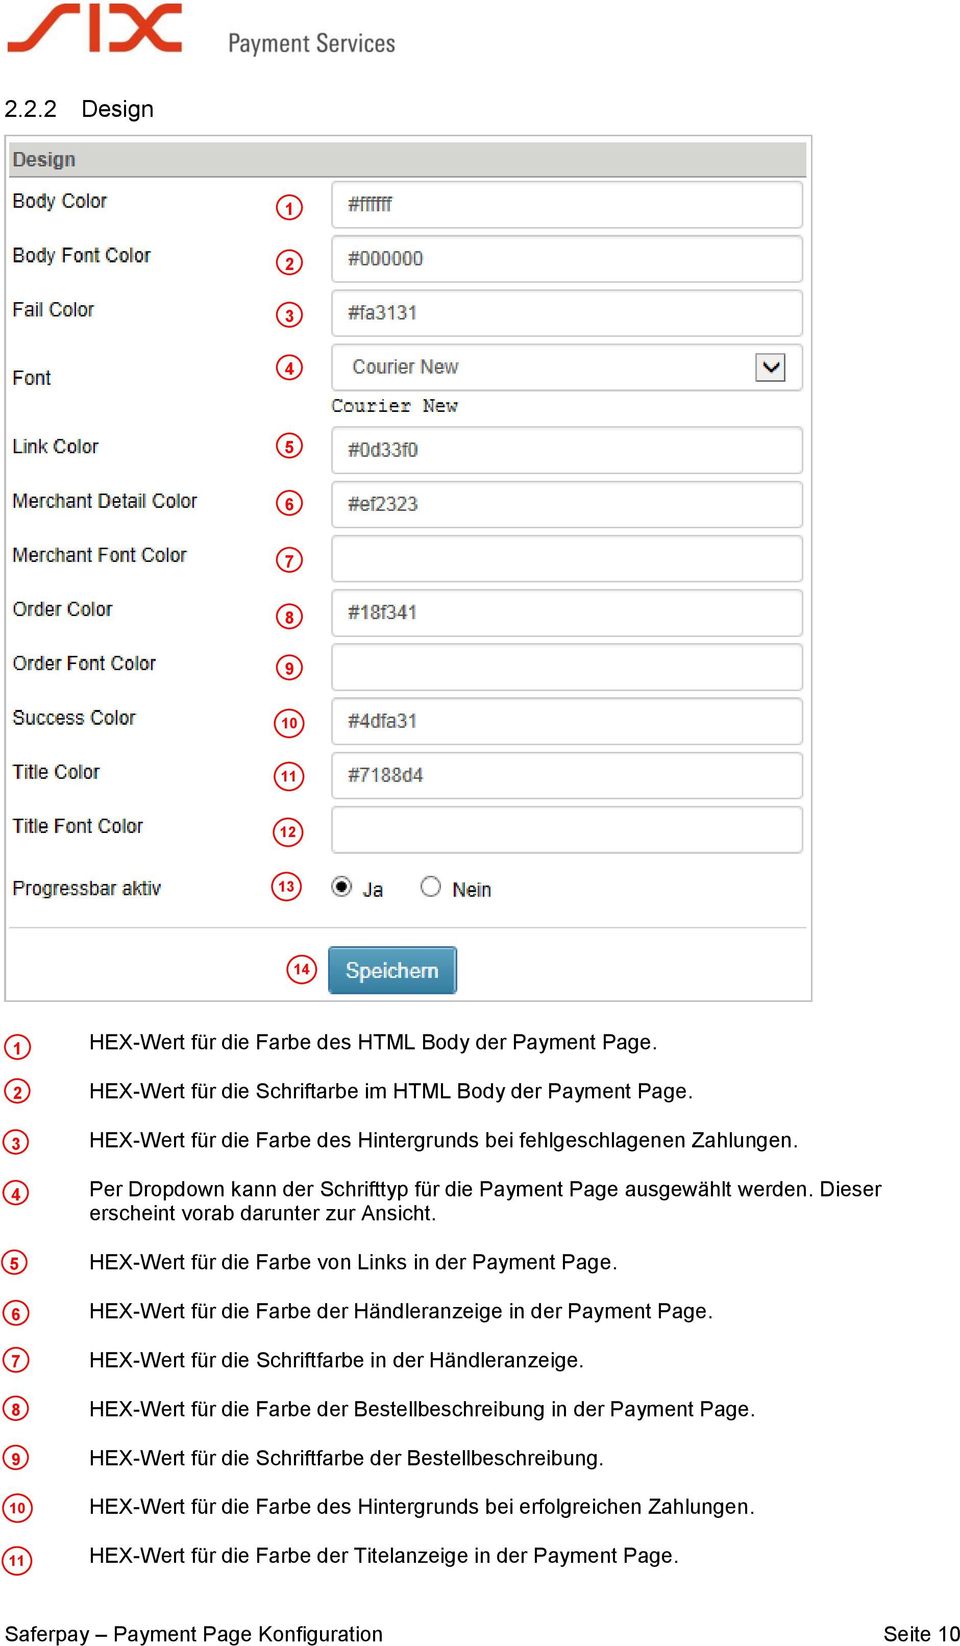 HEX-Wert für die Farbe von Links in der Payment Page. HEX-Wert für die Farbe der Händleranzeige in der Payment Page. HEX-Wert für die Schriftfarbe in der Händleranzeige.